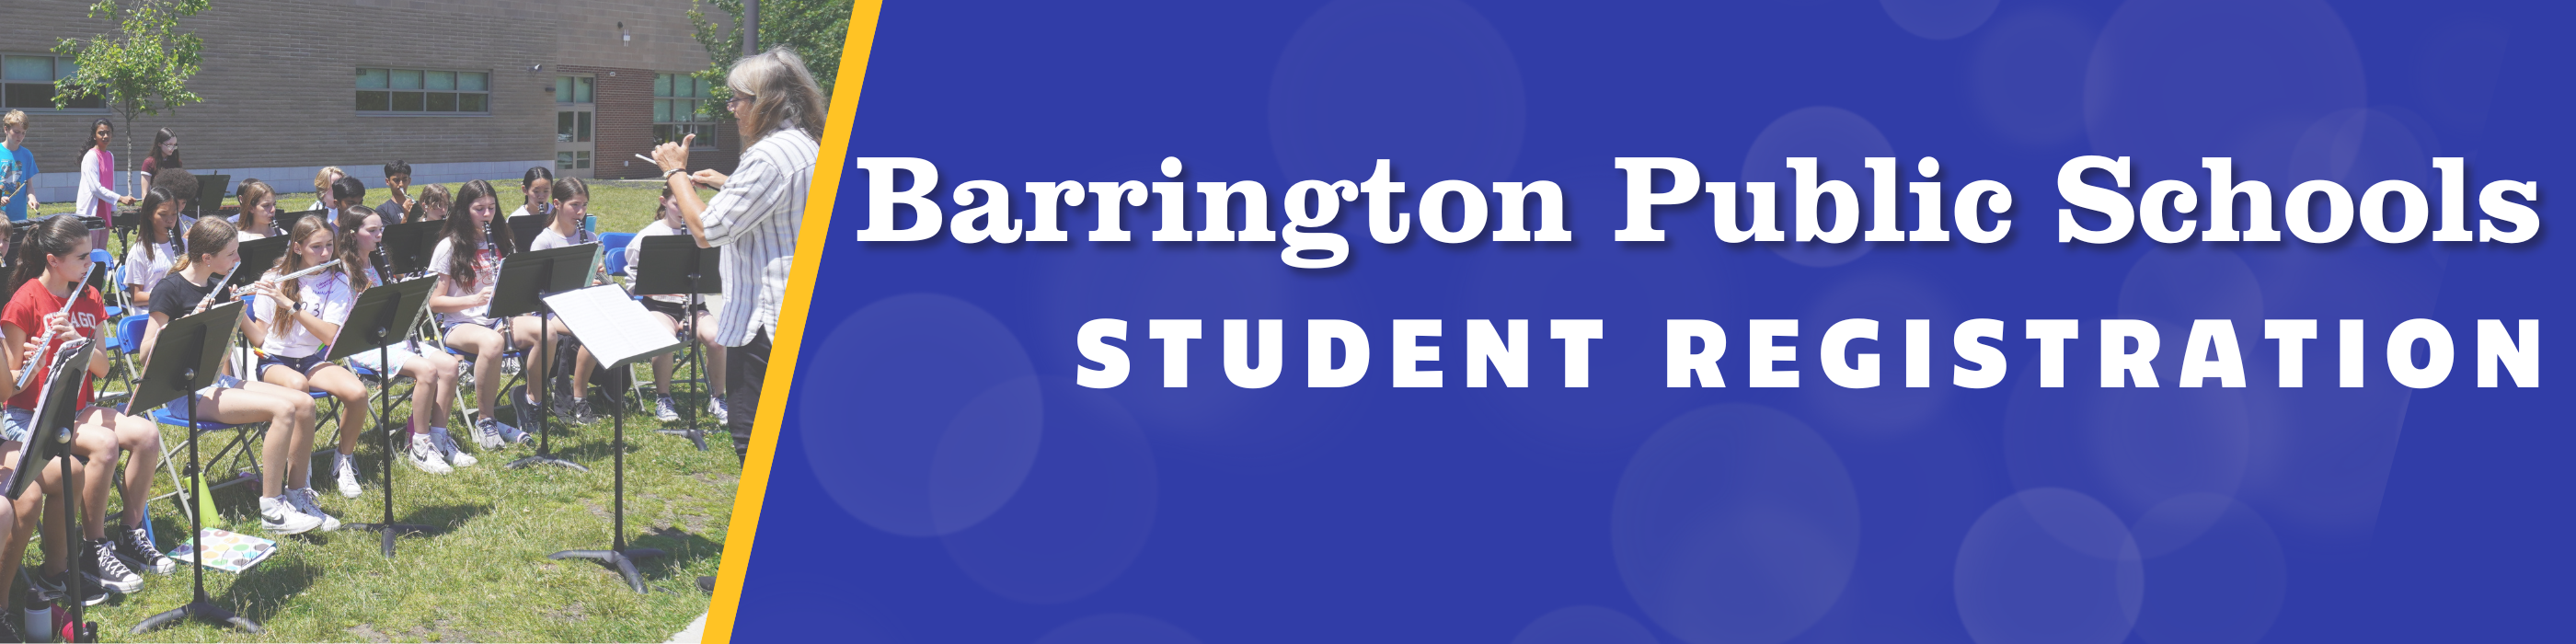 barrington public schools student registration